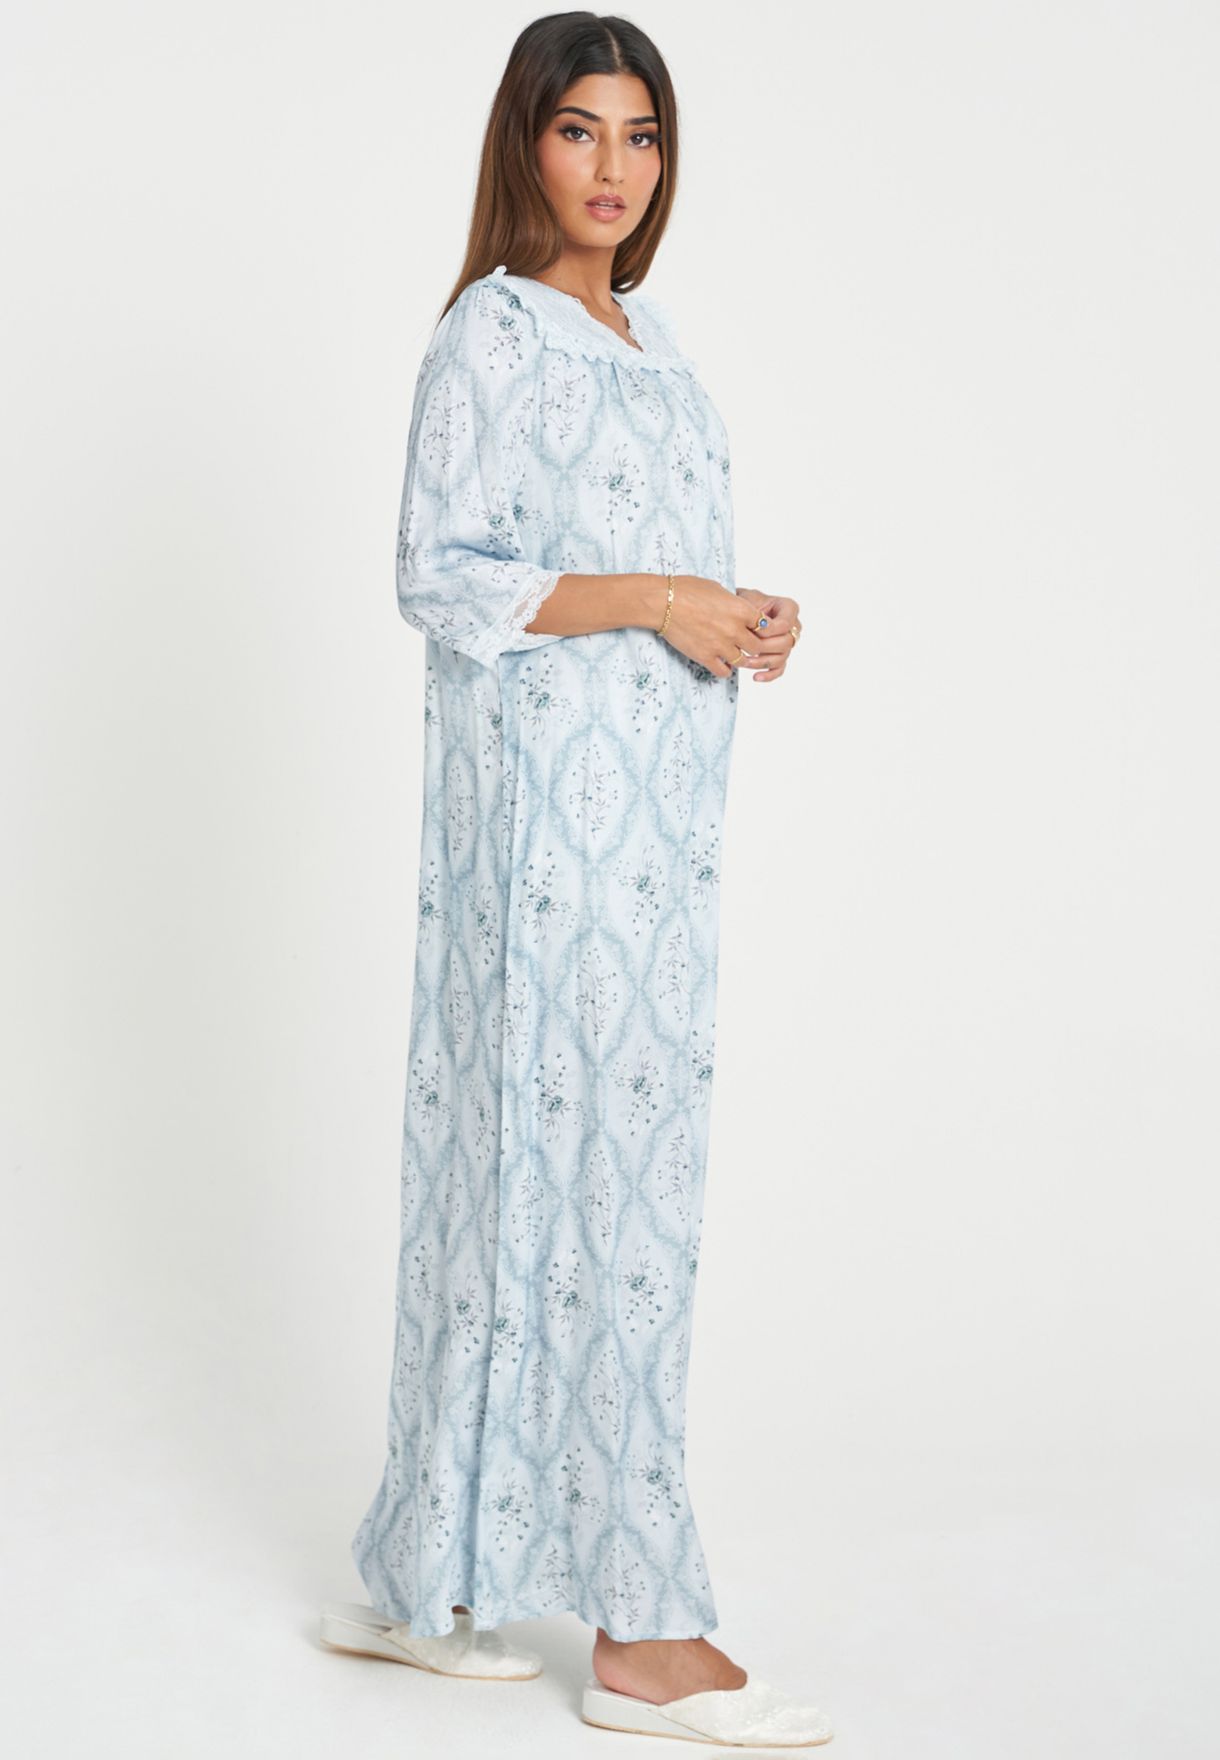 Lace Trim Printed Yoke Nightdress